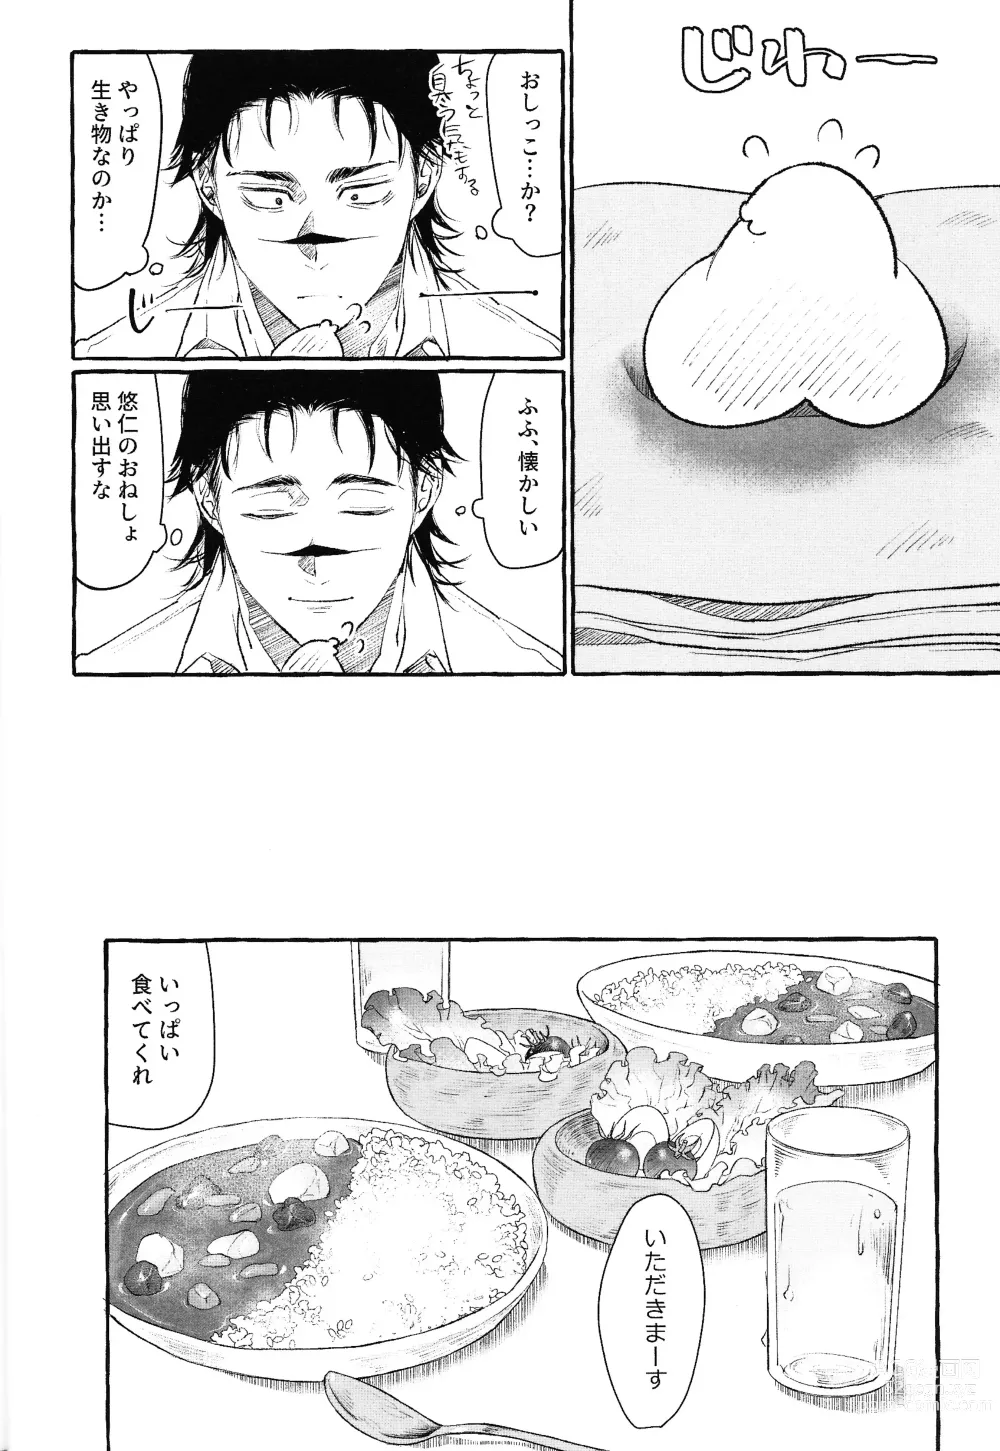 Page 11 of doujinshi Otouto no Kimochi